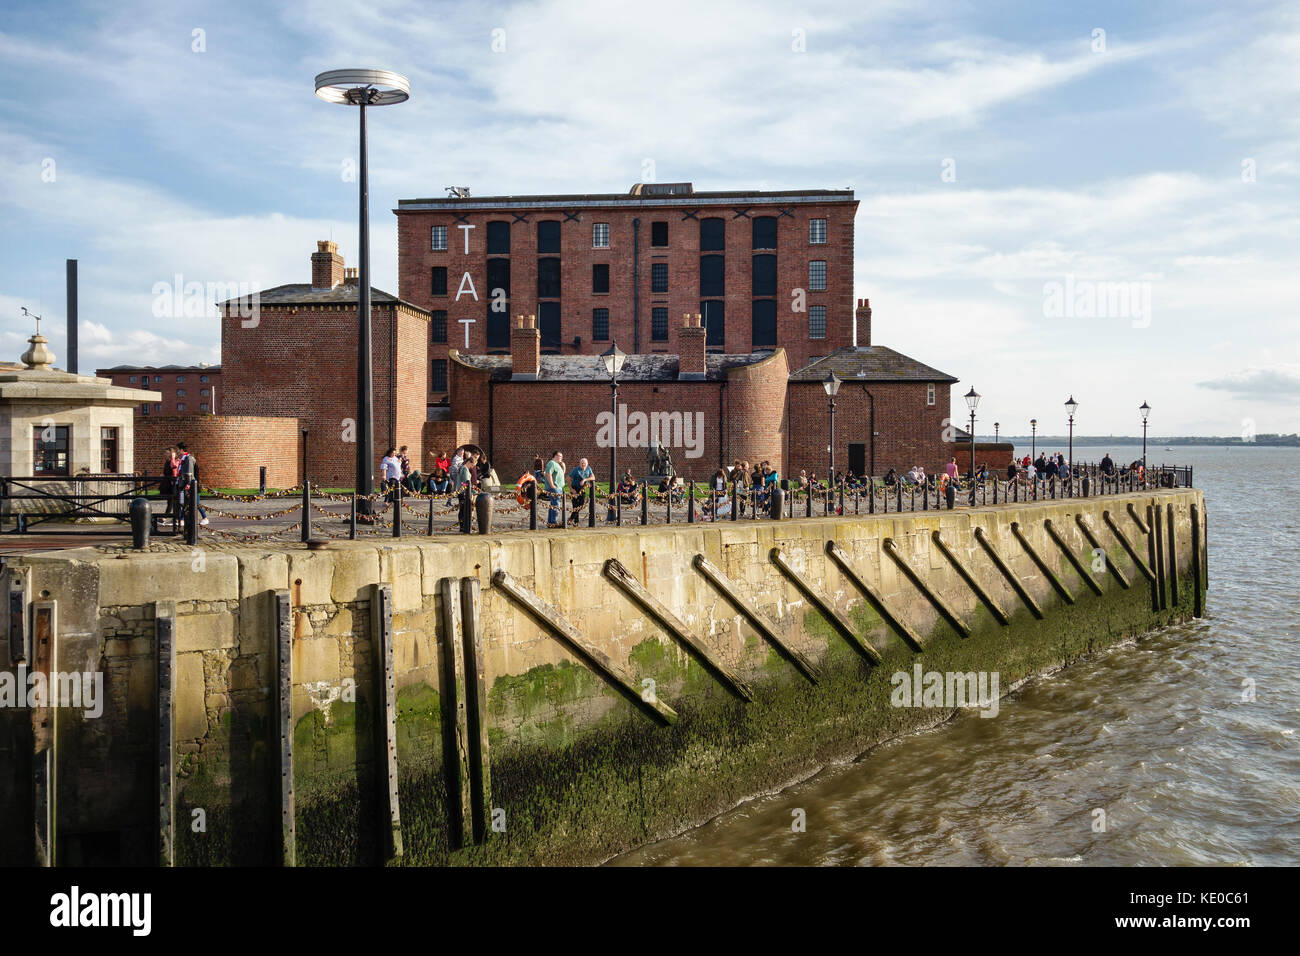 Pier Head, Liverpool, Regno Unito. La Tate Gallery di Liverpool sorge sul fiume restaurato Mersey waterfront Foto Stock